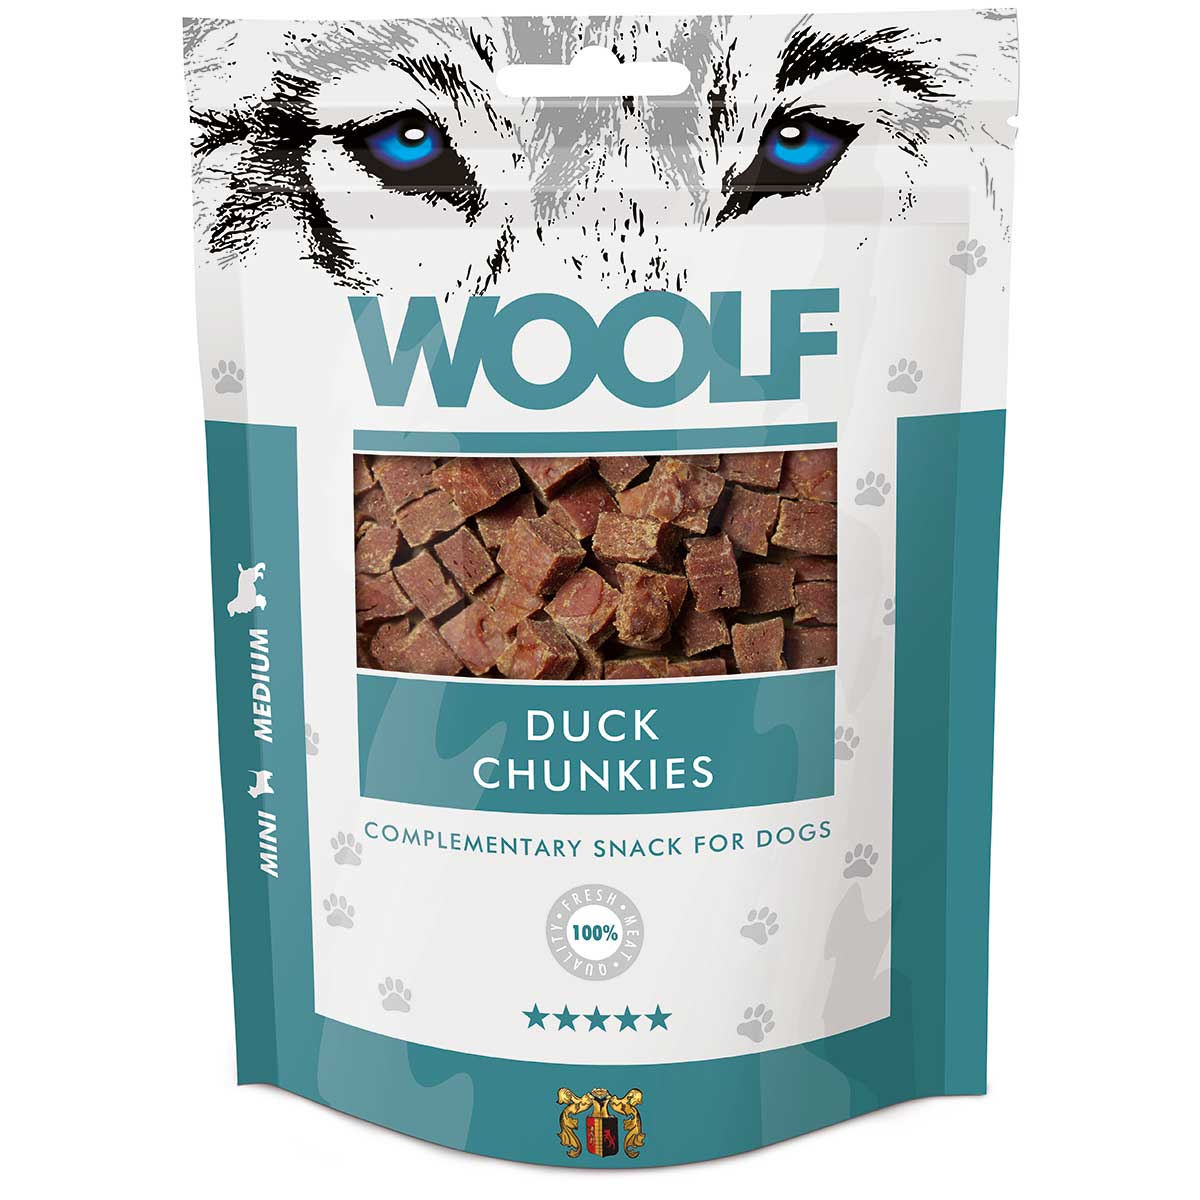 Woolf Dog Treat Duck Chunkies